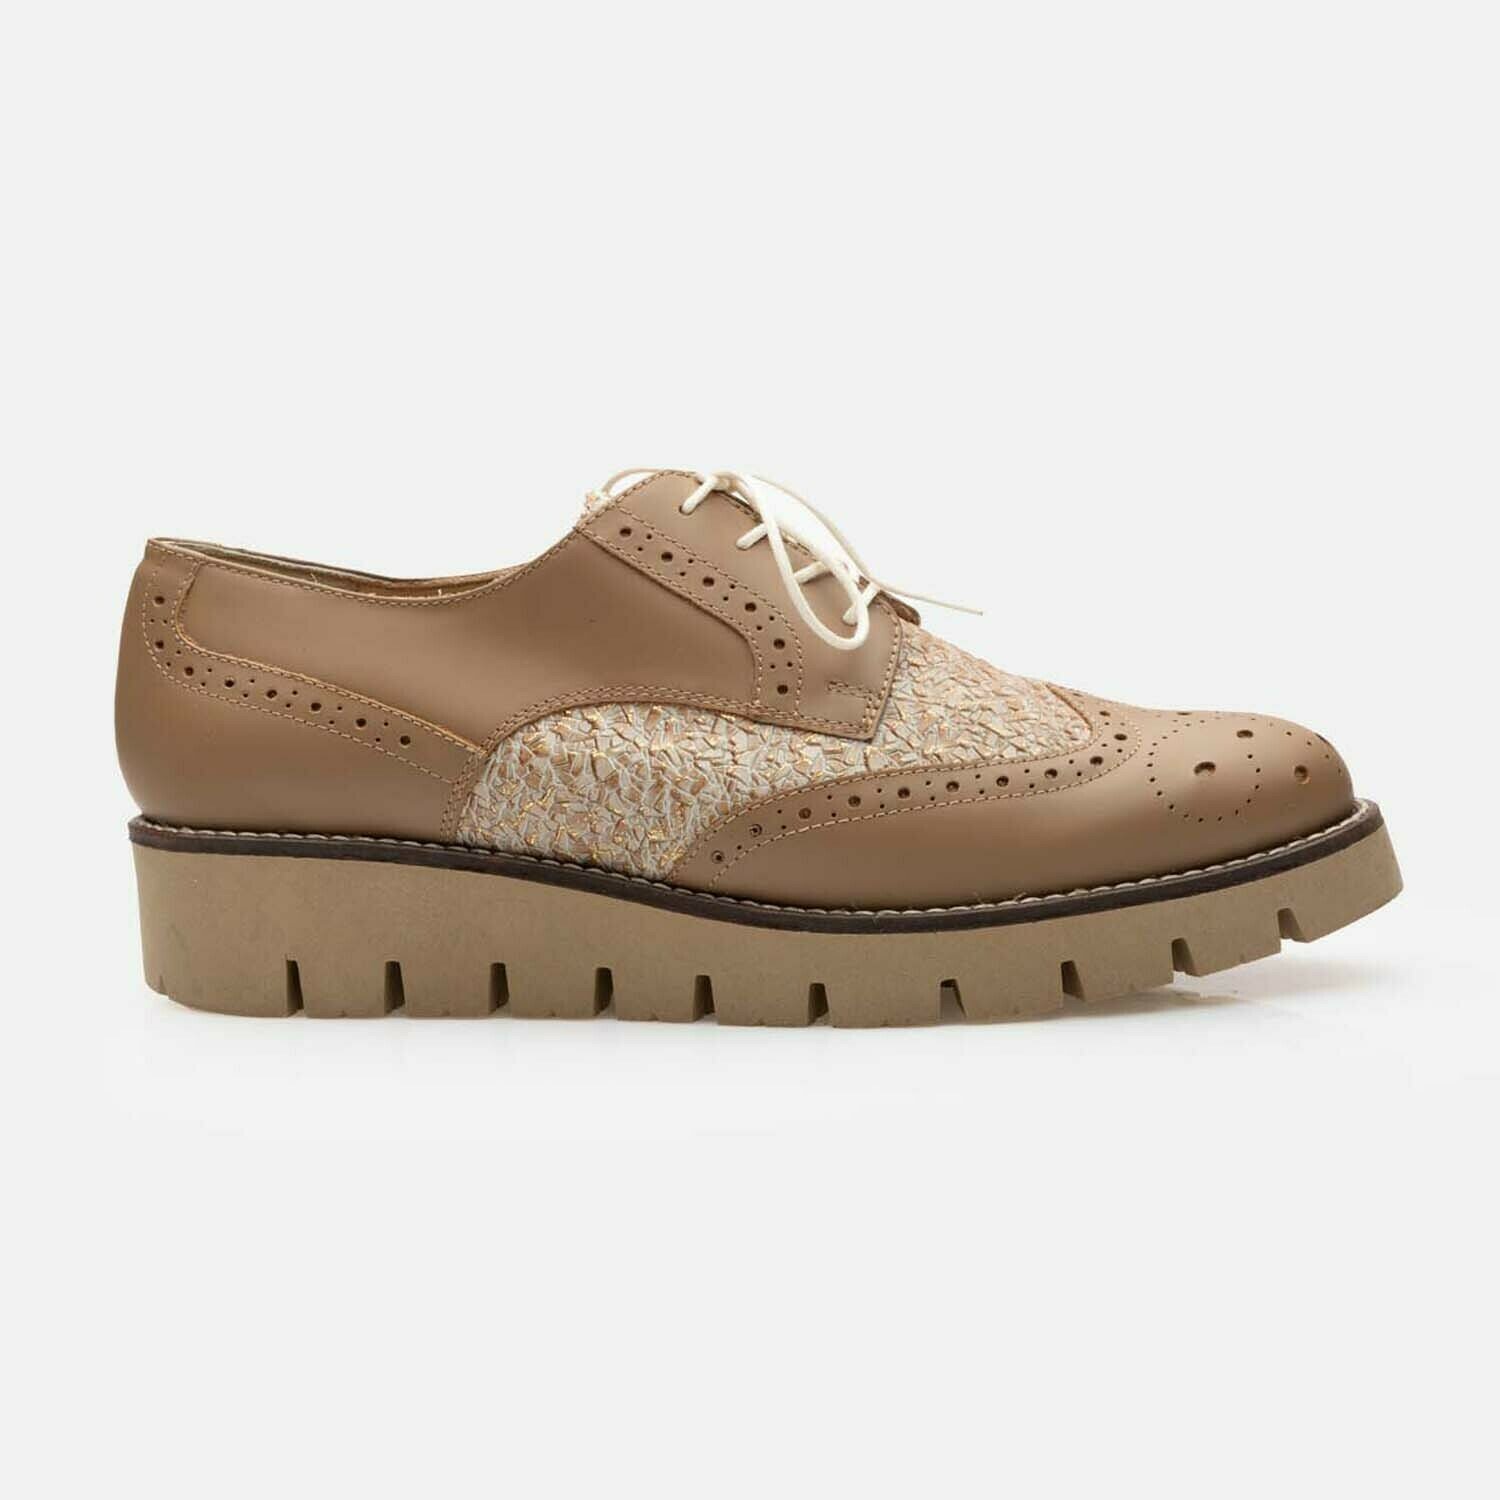 Pantofi casual dama din piele naturala, Leofex - 012-1 Taupe Auriu Box